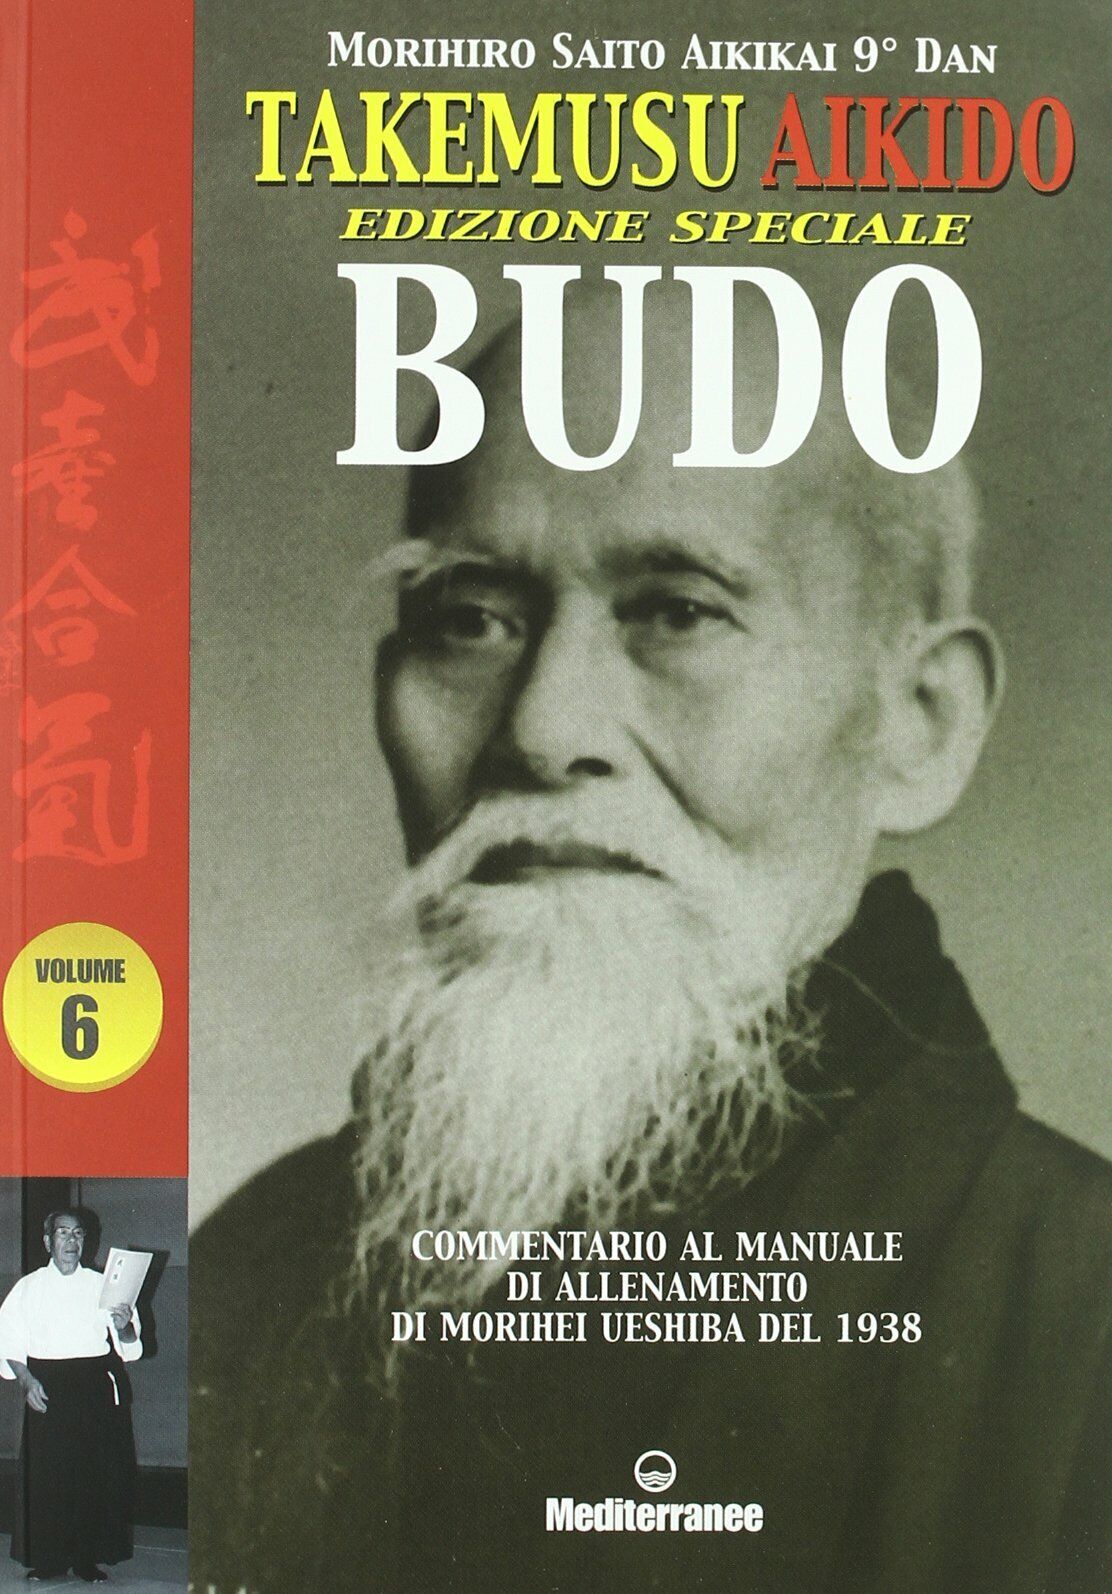 takemusu aikido vol 6 - Morihiro Saito - Ediizoni Mediterranee, 2011 libro usato